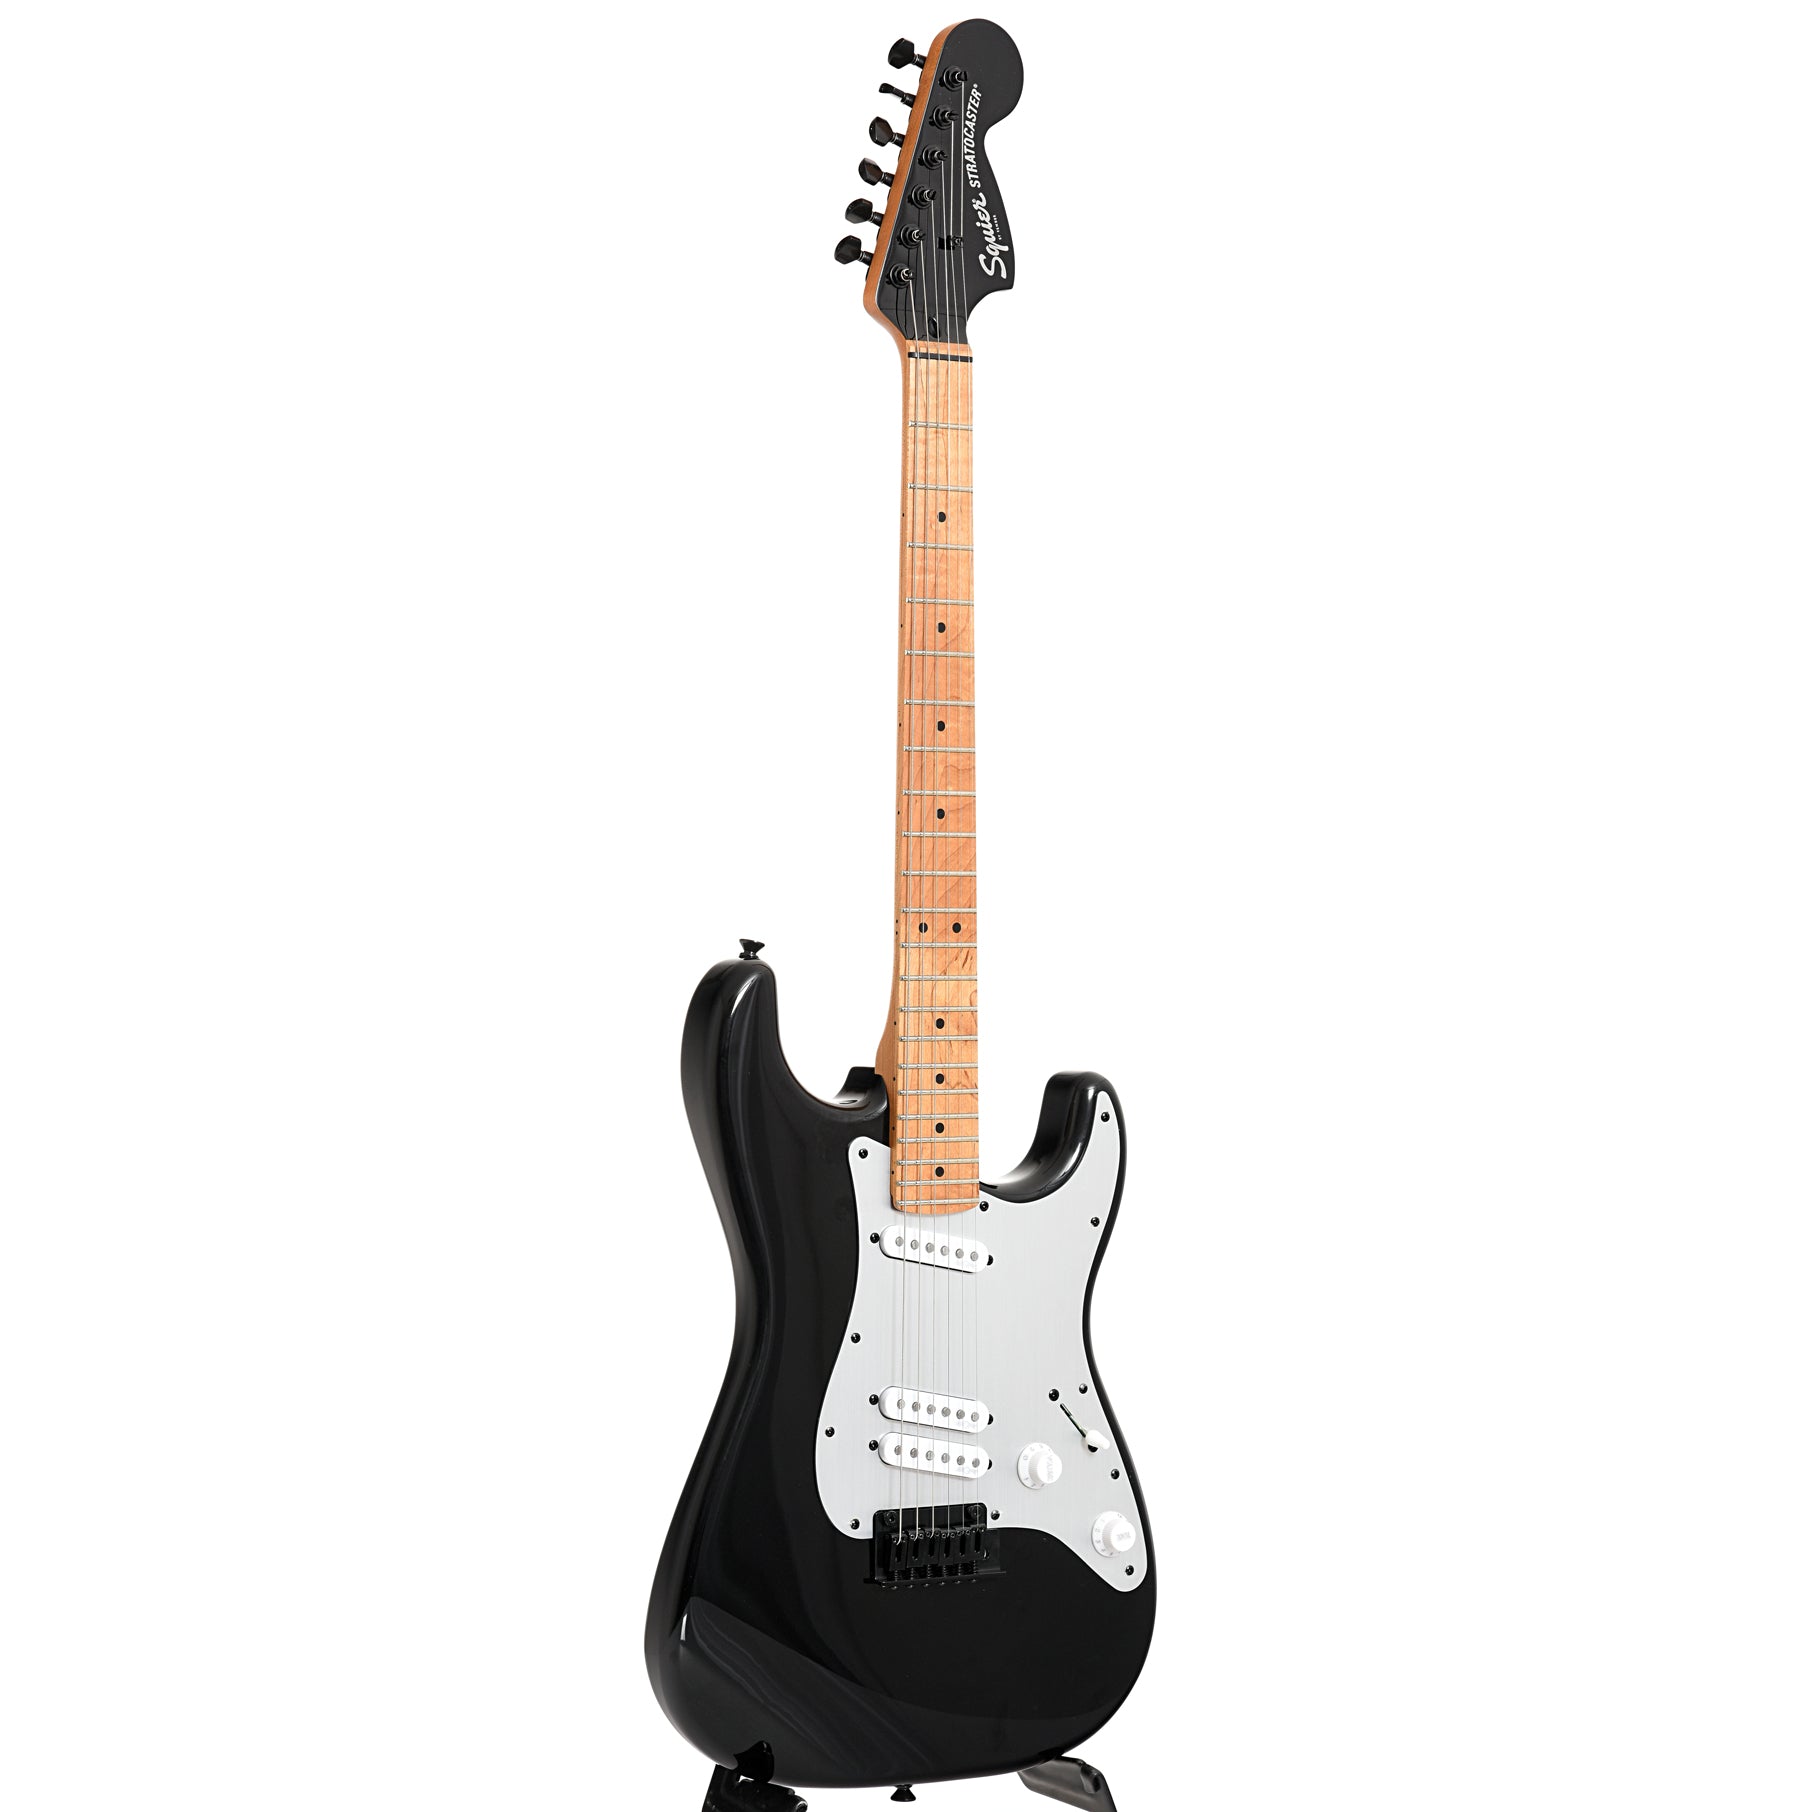 Squier Contemporary Stratocaster Special, Black – Elderly Instruments